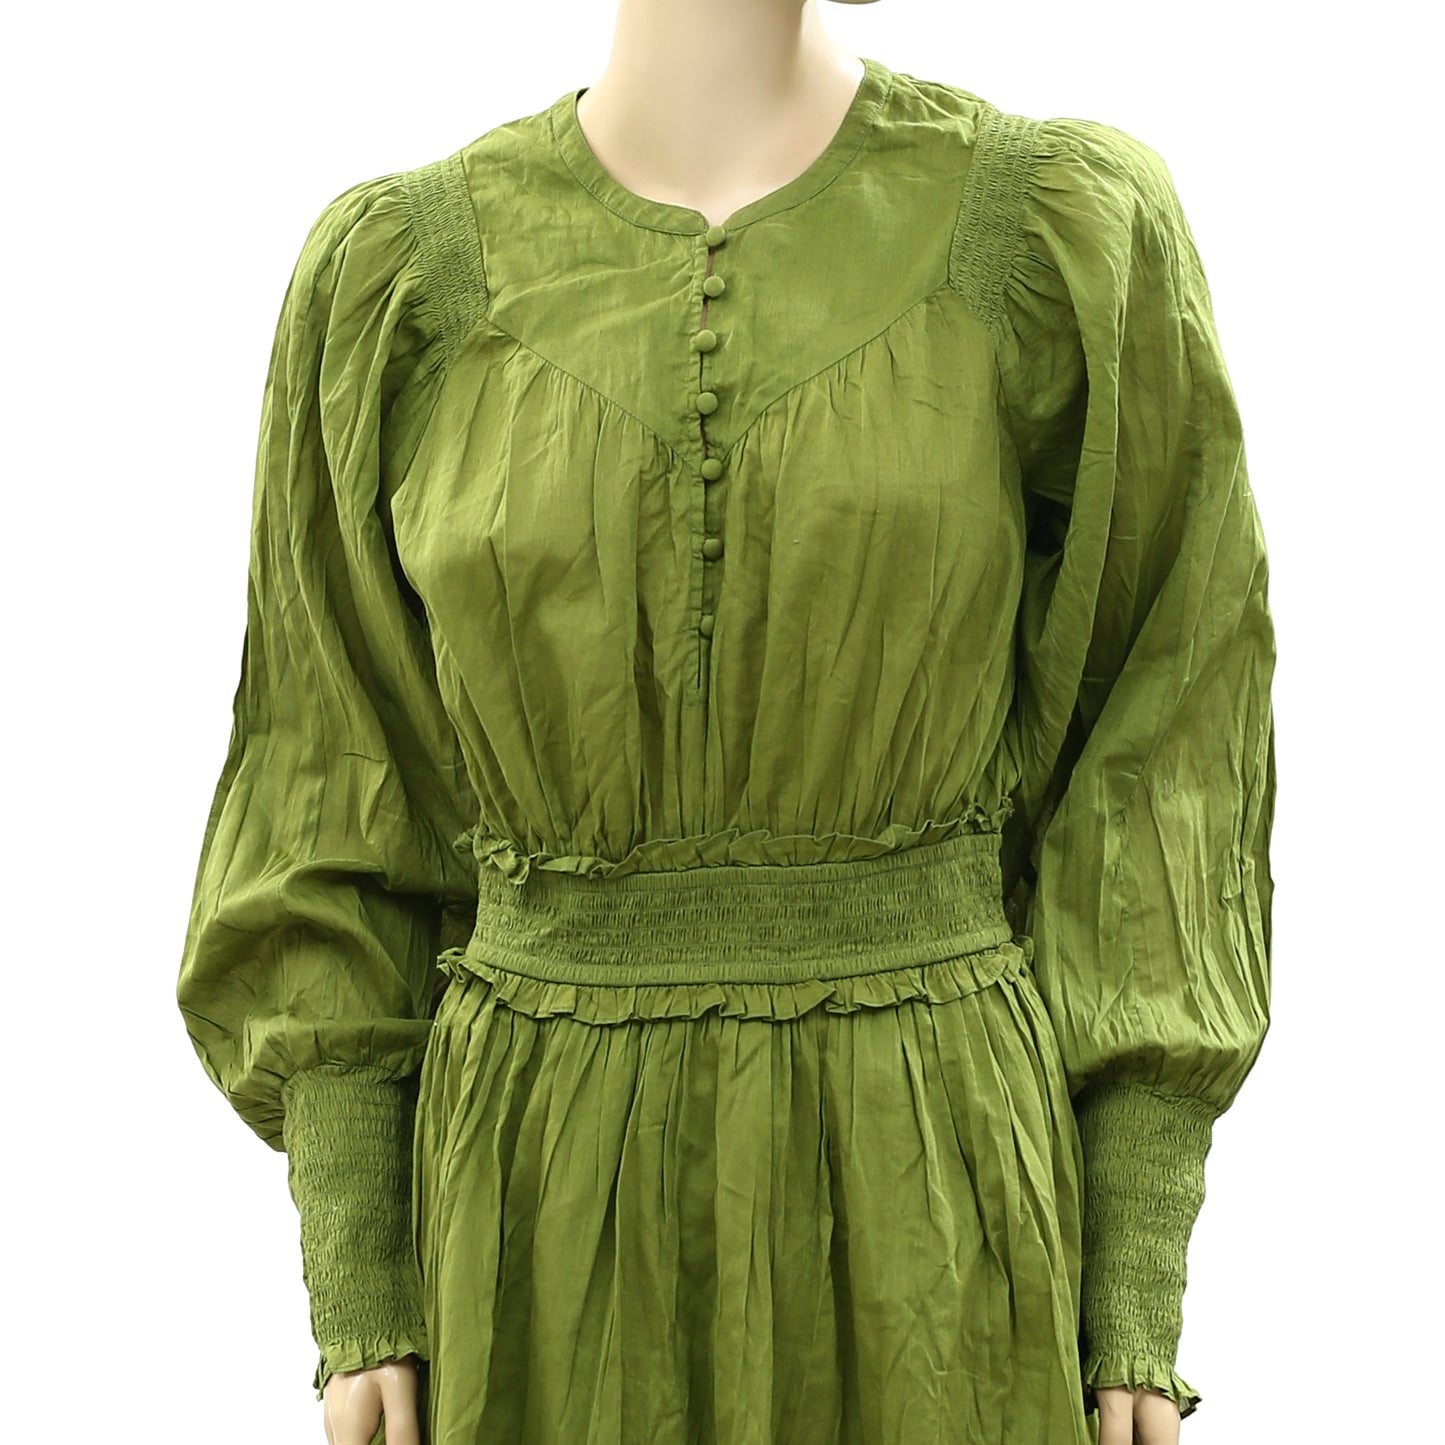 Happyxnature Kate Hudson Smocked Green Mini Dress